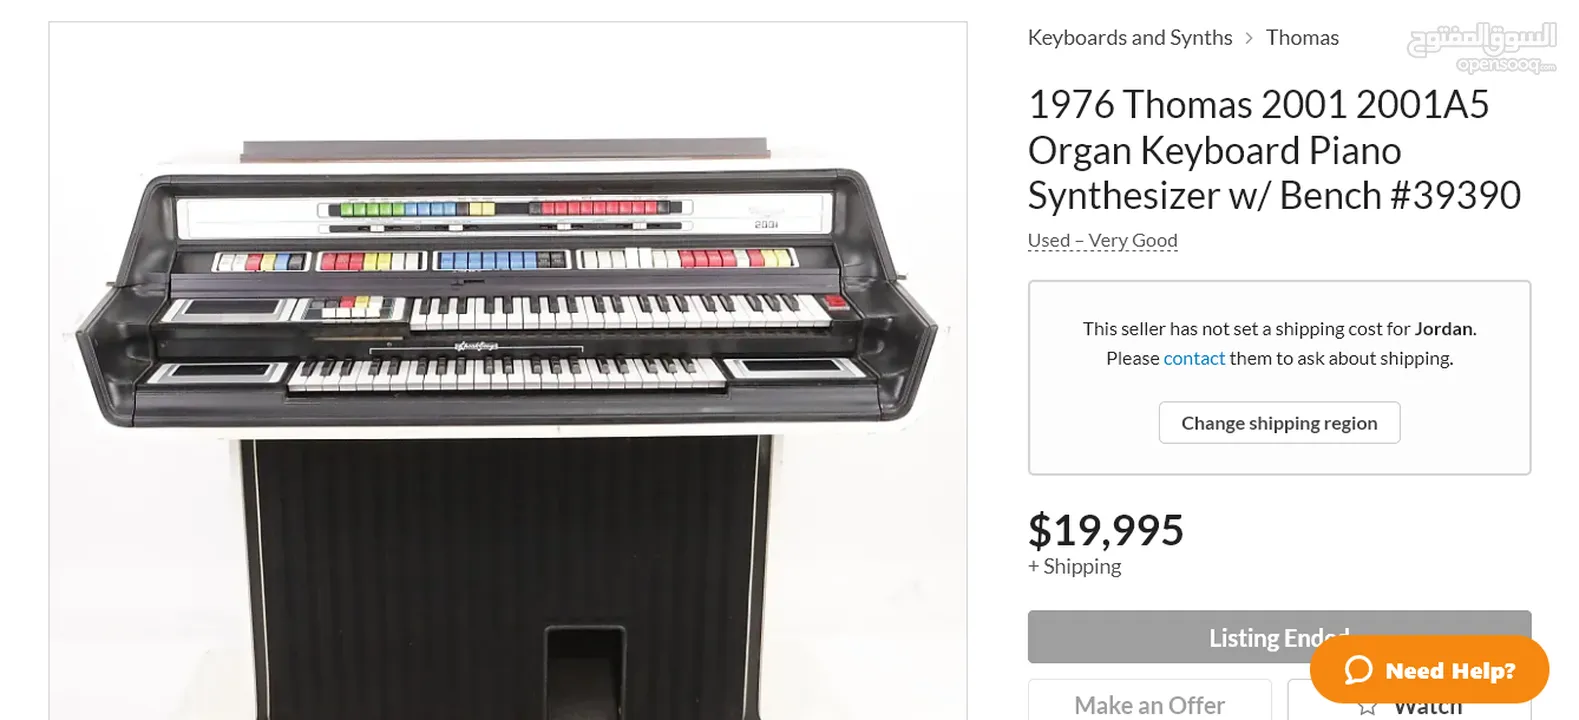 بيانو انتيك ثمنه في اوروبا 20 الف دولار معروض للبيع ب 150 بسبب ضيق المكان